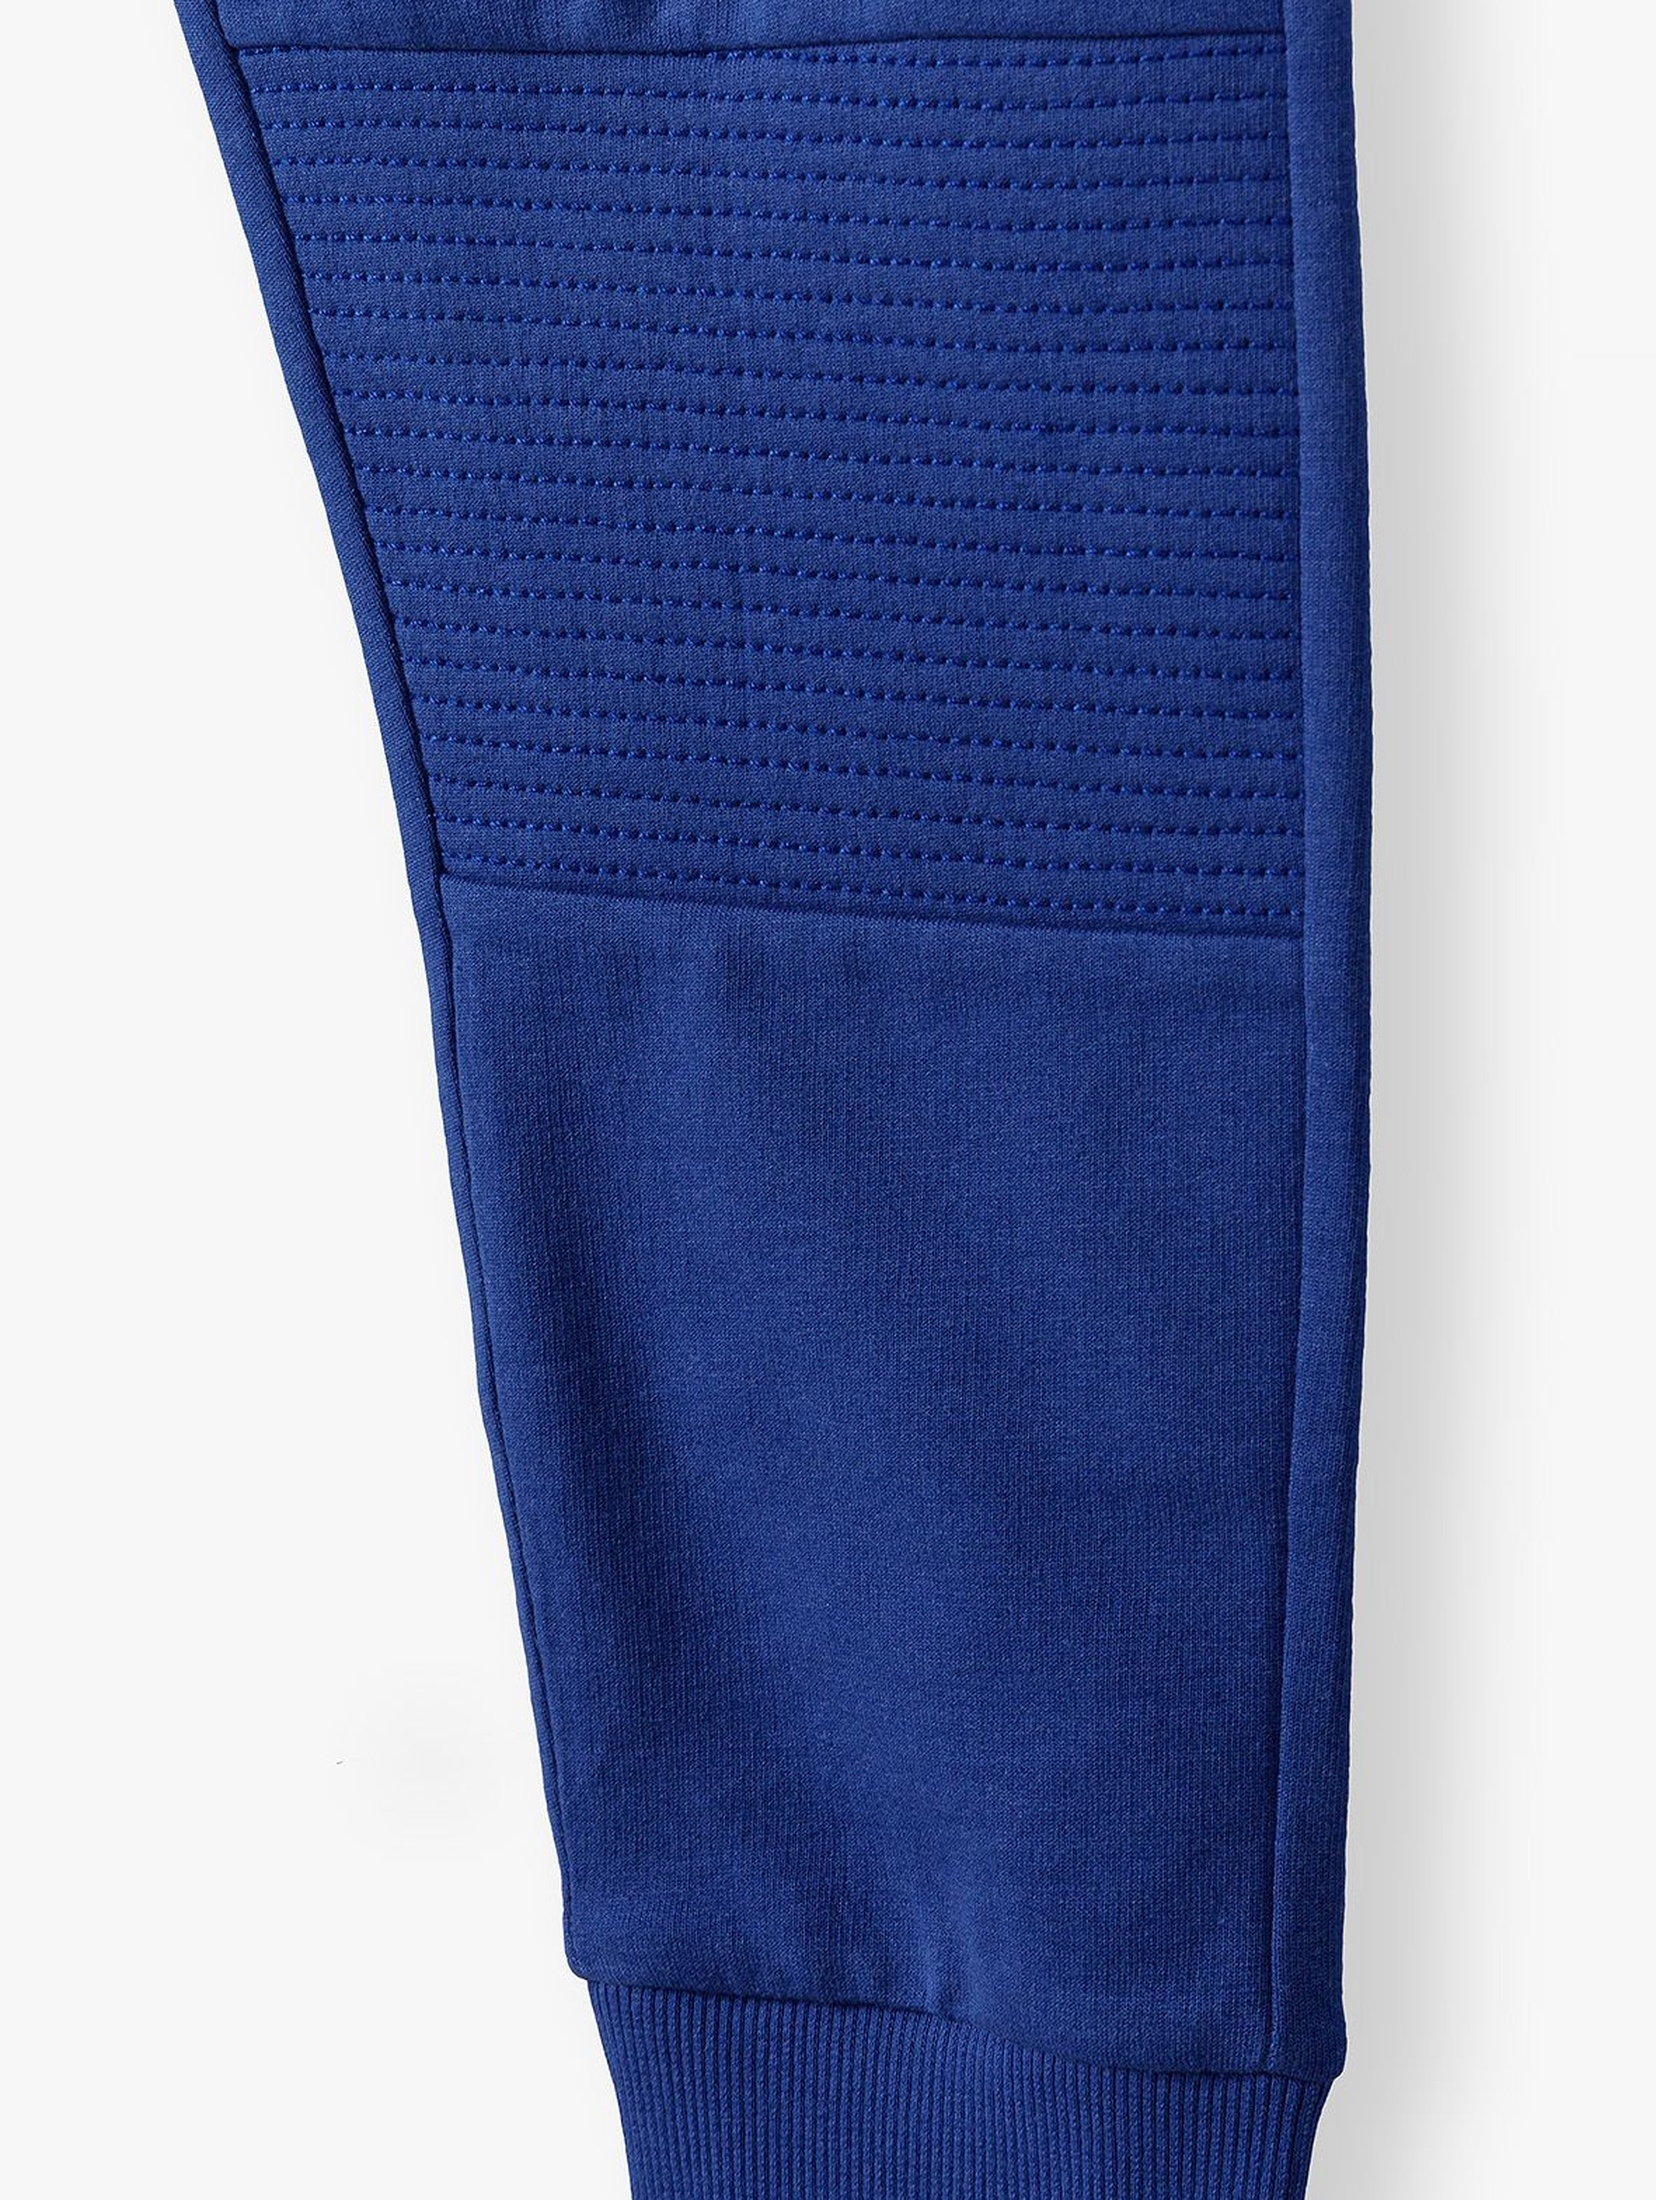 Spodnie dresowe wzmocnione na kolanach - niebieskie